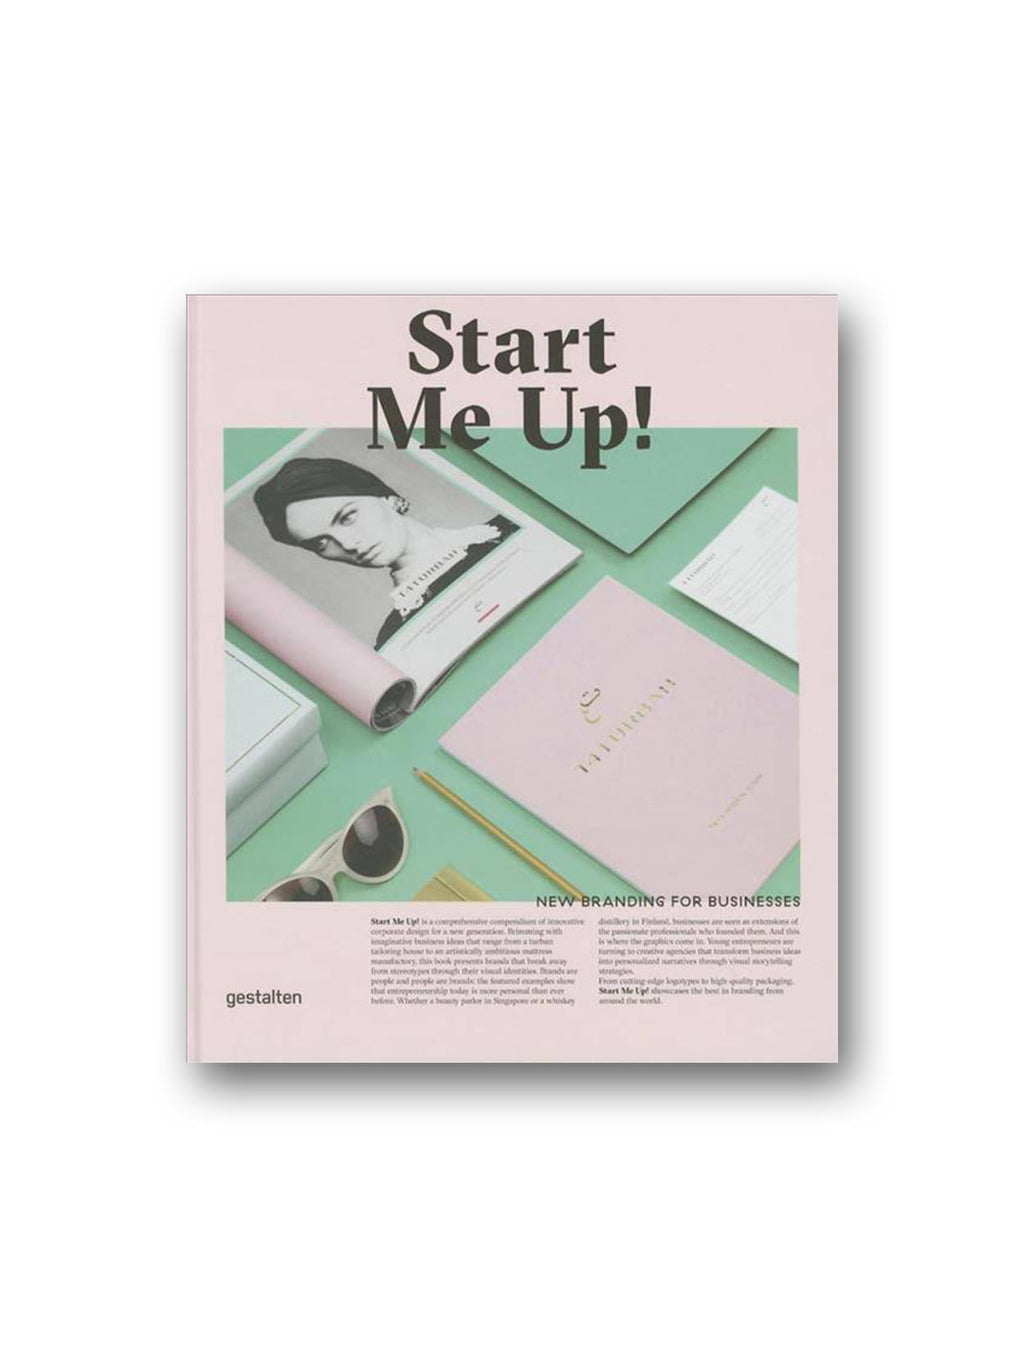 Start Me Up! : New Branding for Businesses